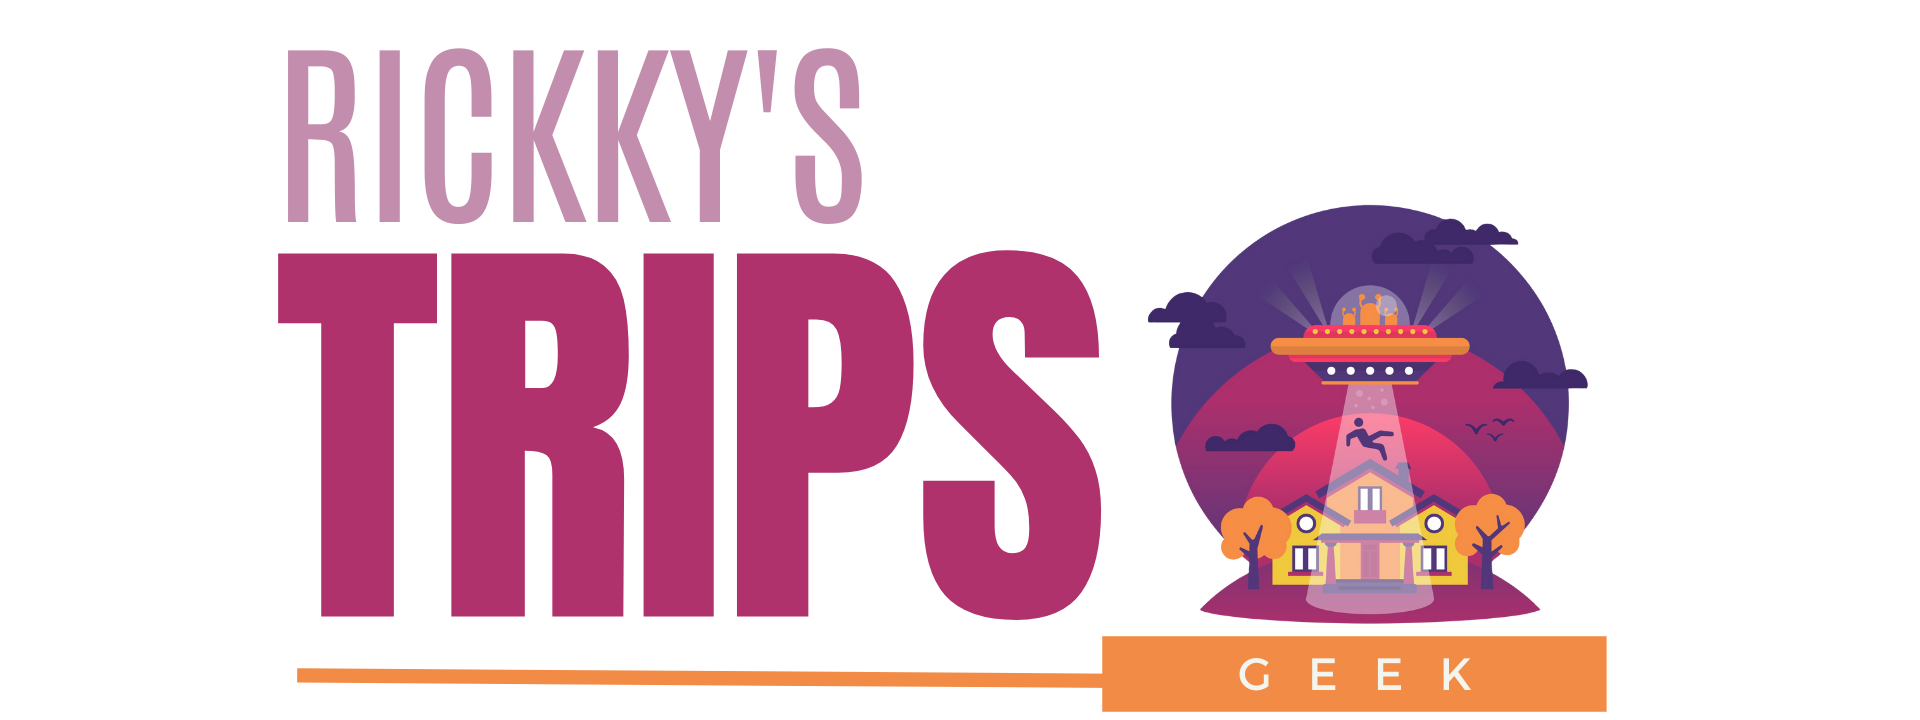 Rickky's Co Logos (geek)